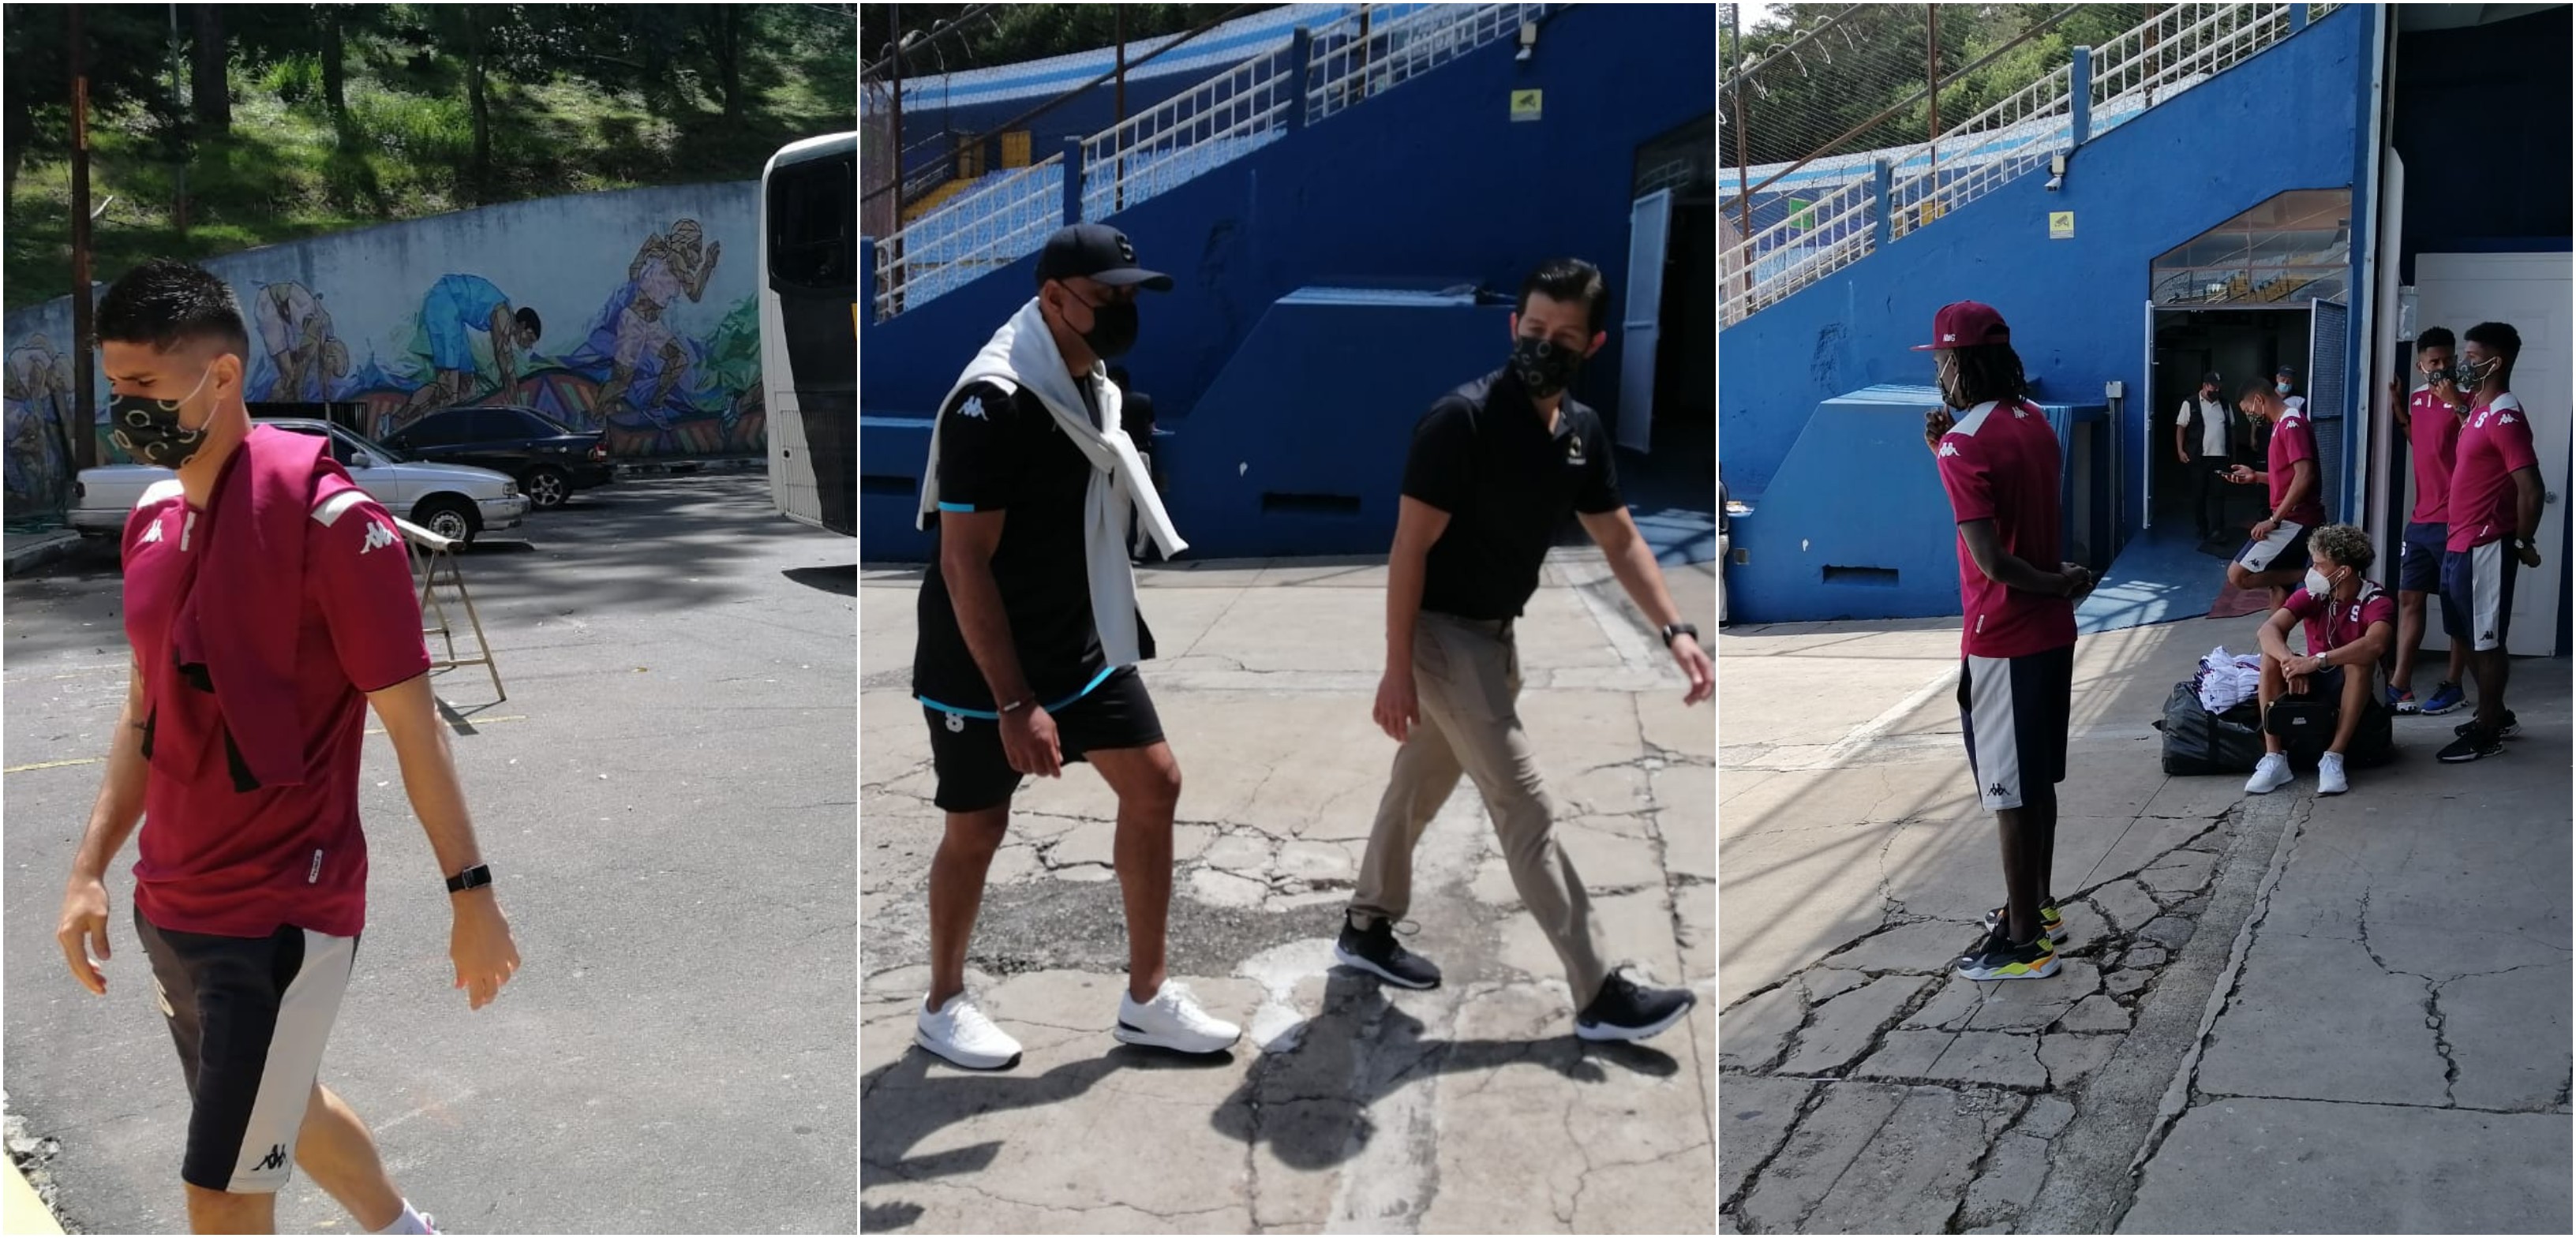 El Saprissa, que dirige Mauricio Wright, llegó este miércoles 22 de septiembre a Guatemala para disputar el juego ante Santa Lucia.  Mauricio Wright dirigió al Malacateco en 2012 y 2017. Foto Prensa Libre: Cortesía.